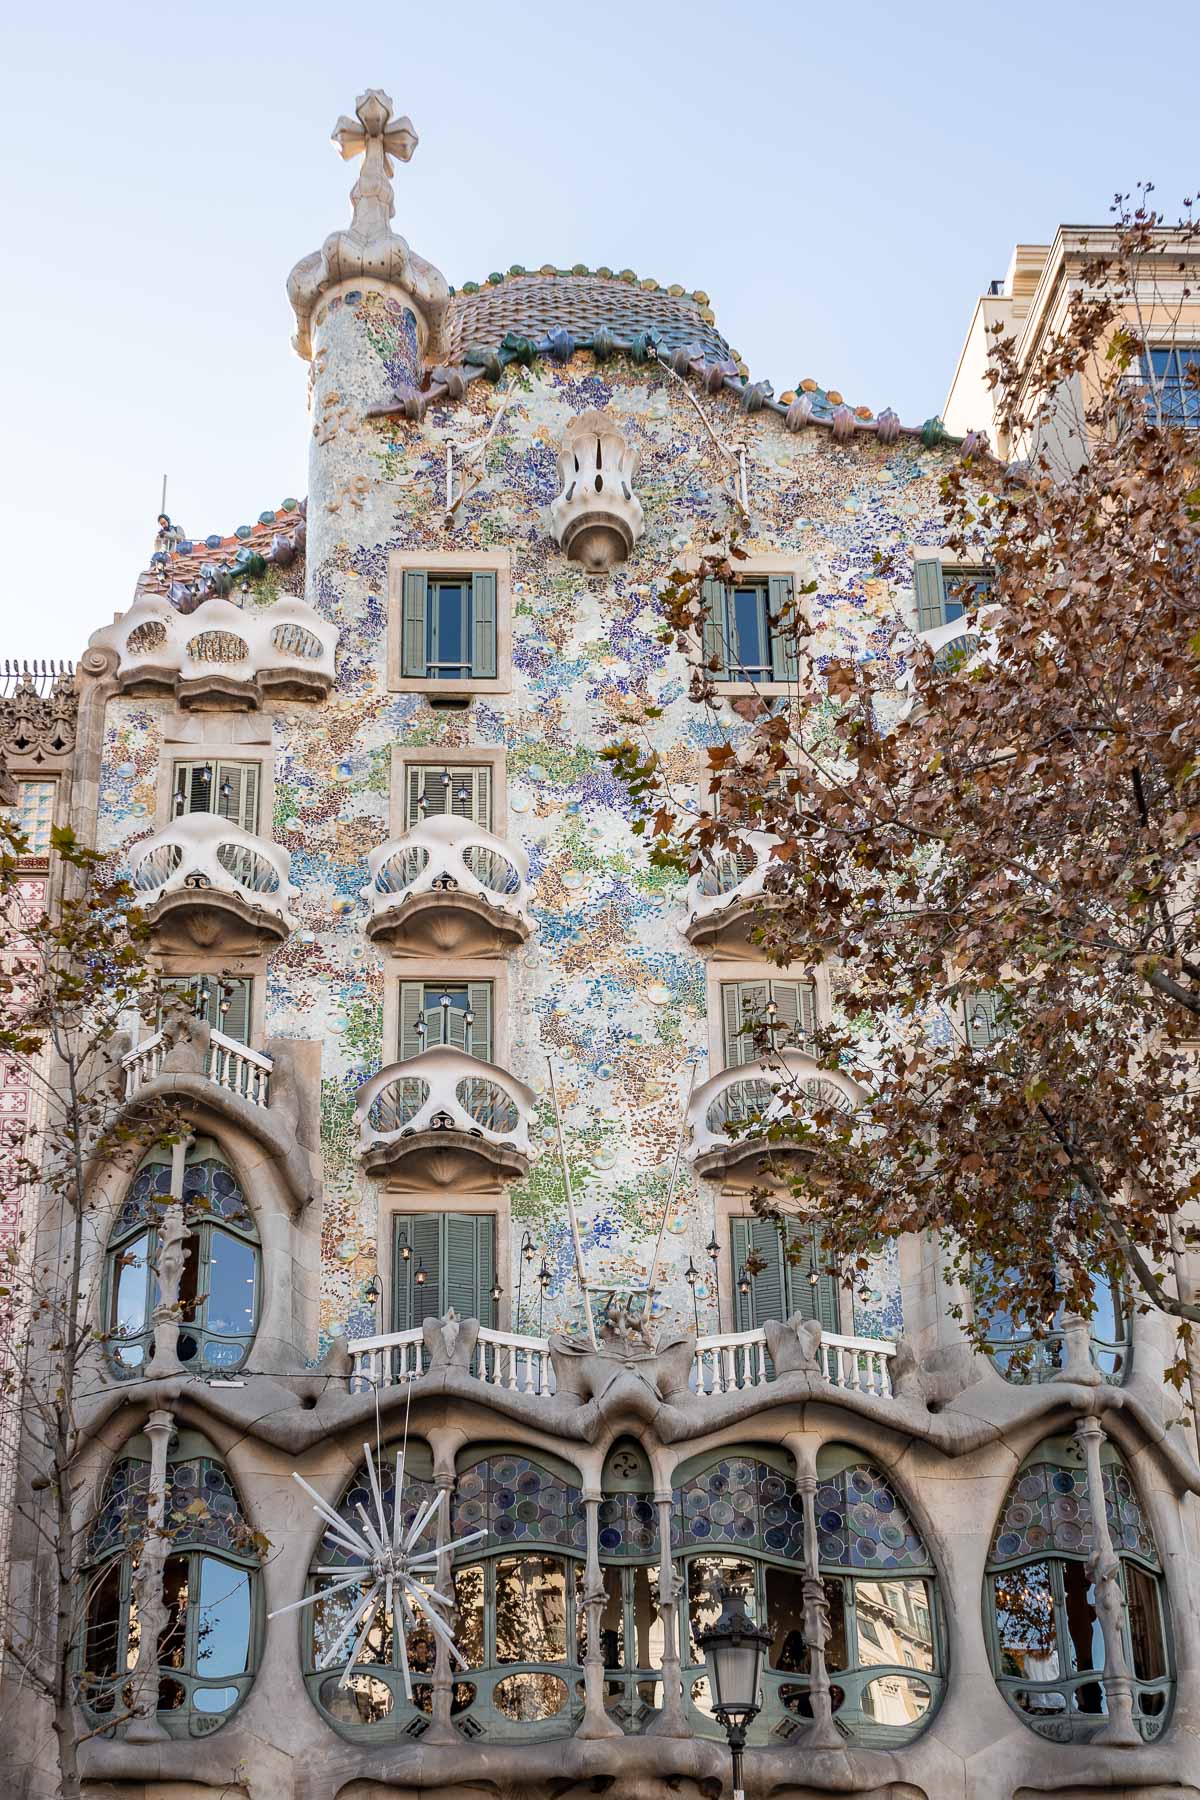 The beautiful facade of Casa Batllo in Barcelona